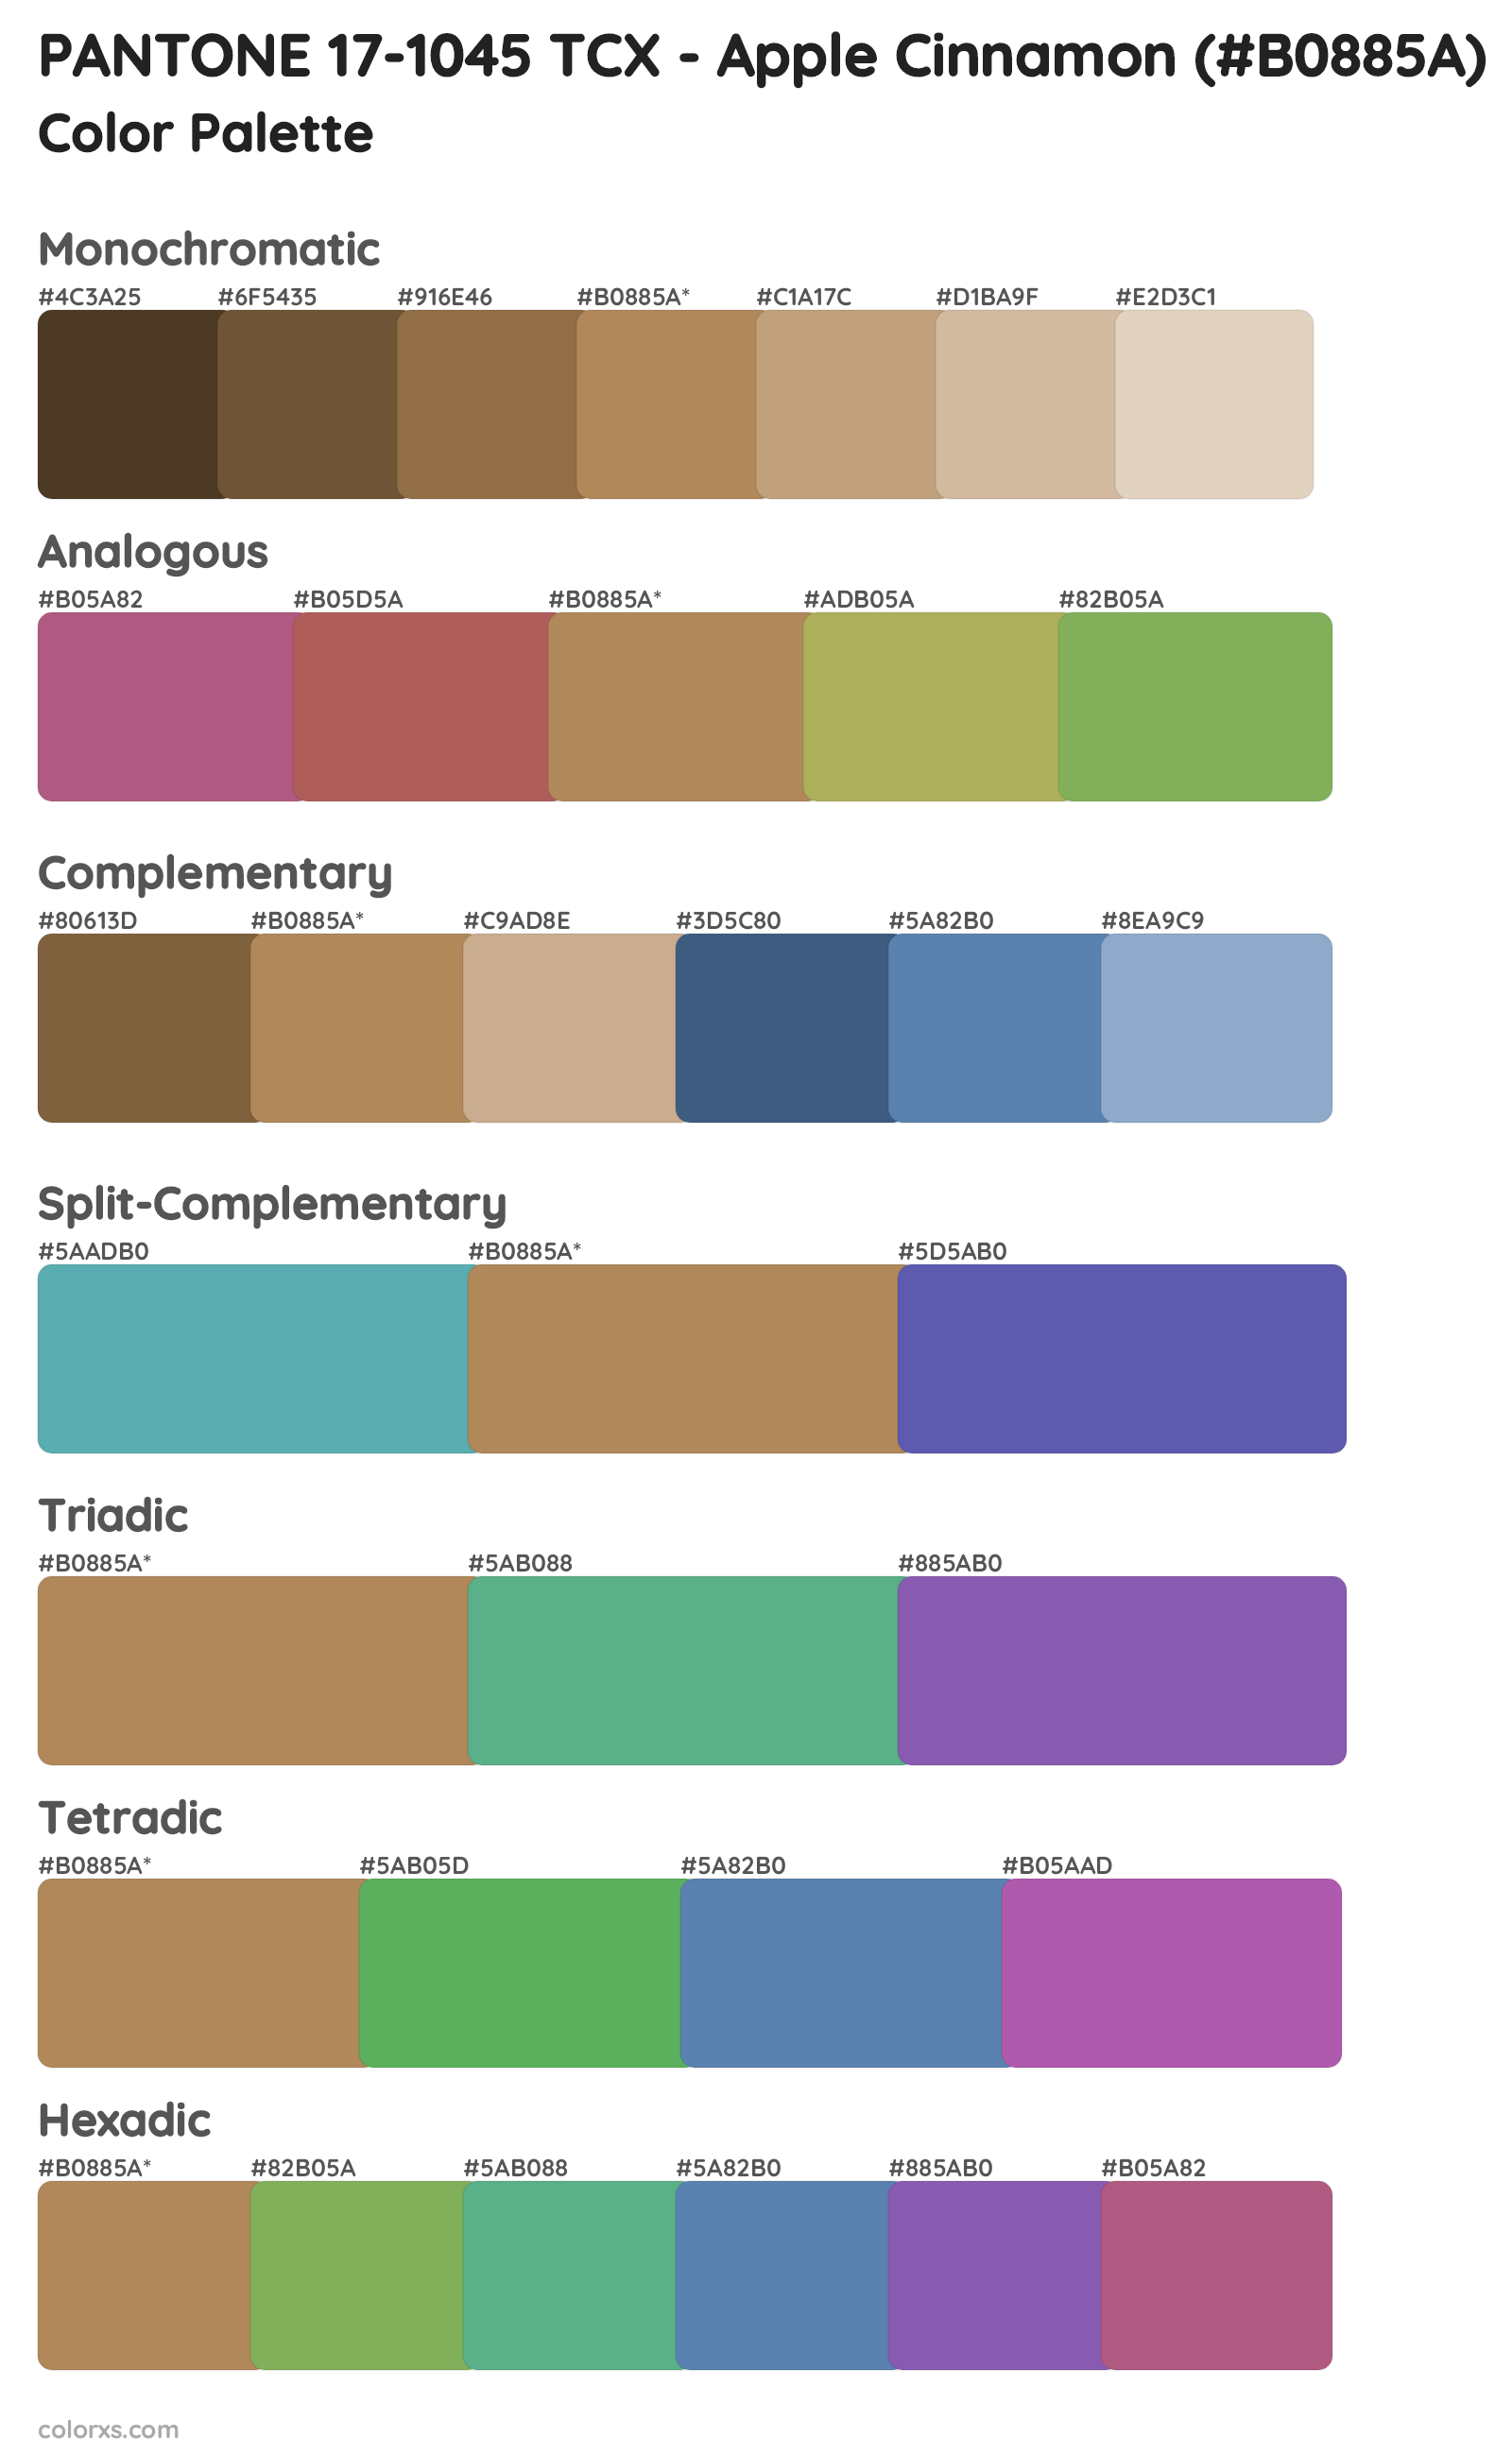 PANTONE 17-1045 TCX - Apple Cinnamon Color Scheme Palettes